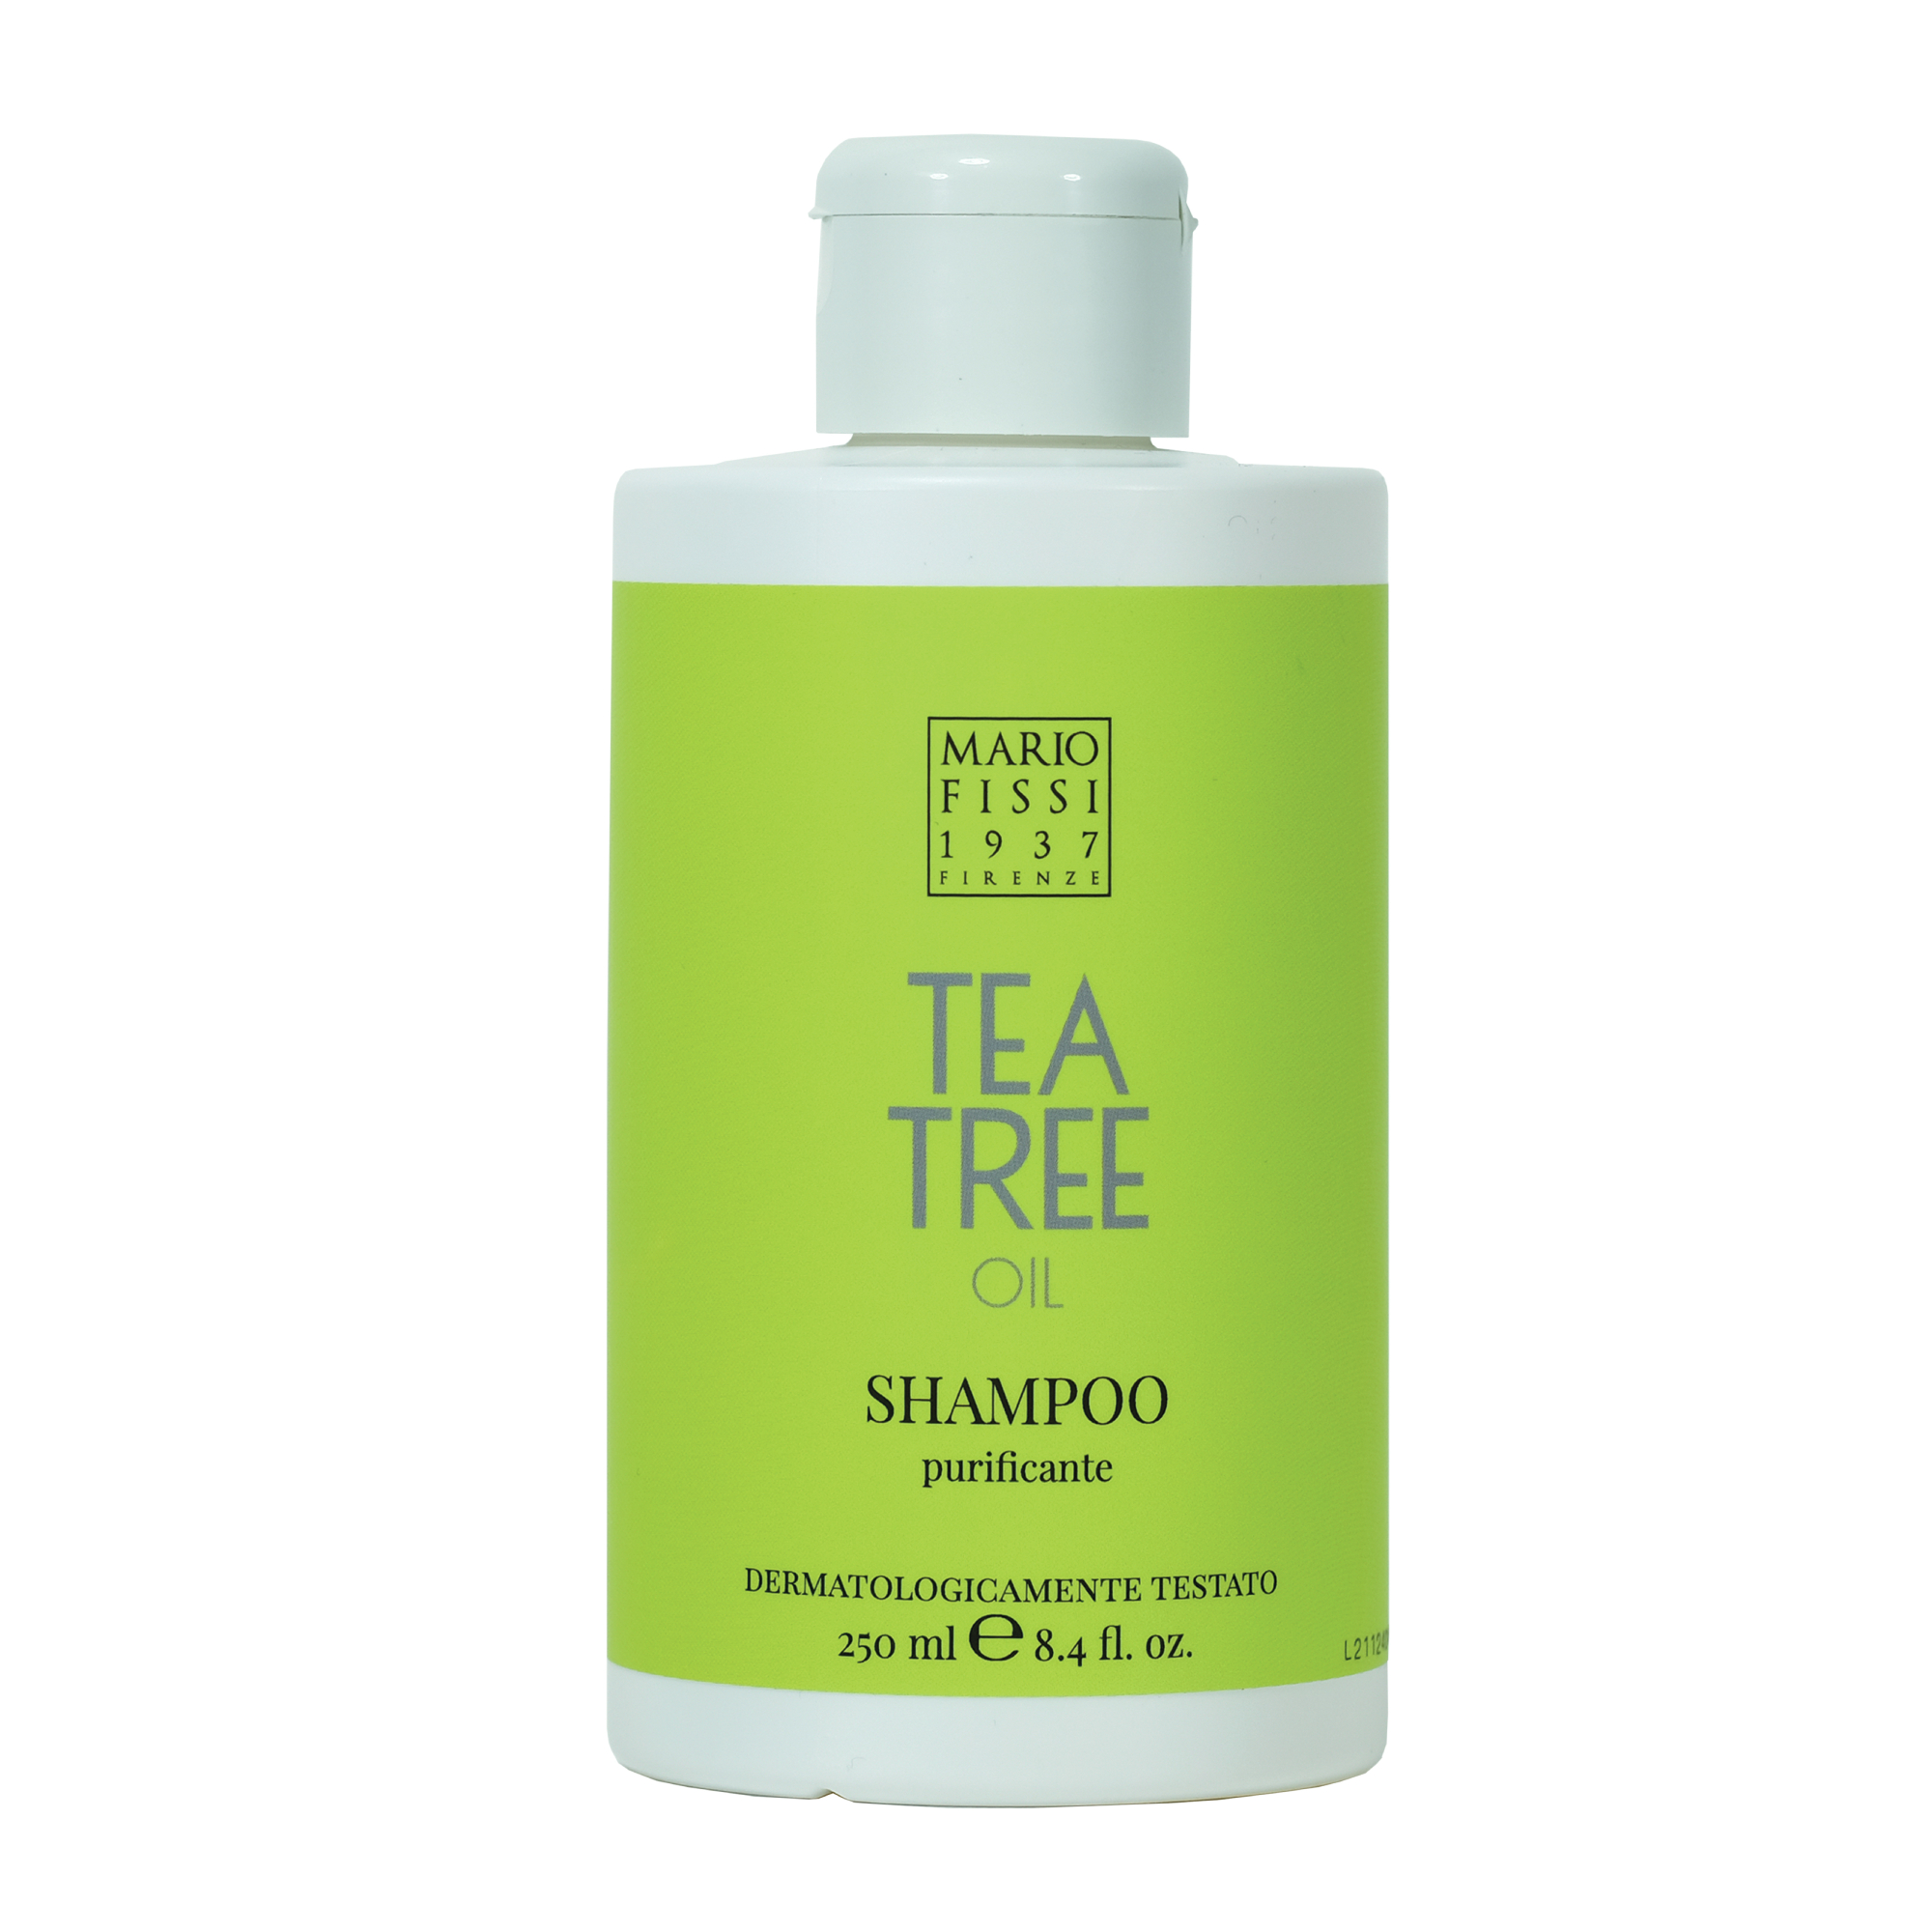 фото Шампунь для волос mario fissi 1937 funzioniale tea tree oil очищающий с маслом чайного дерева 250 мл